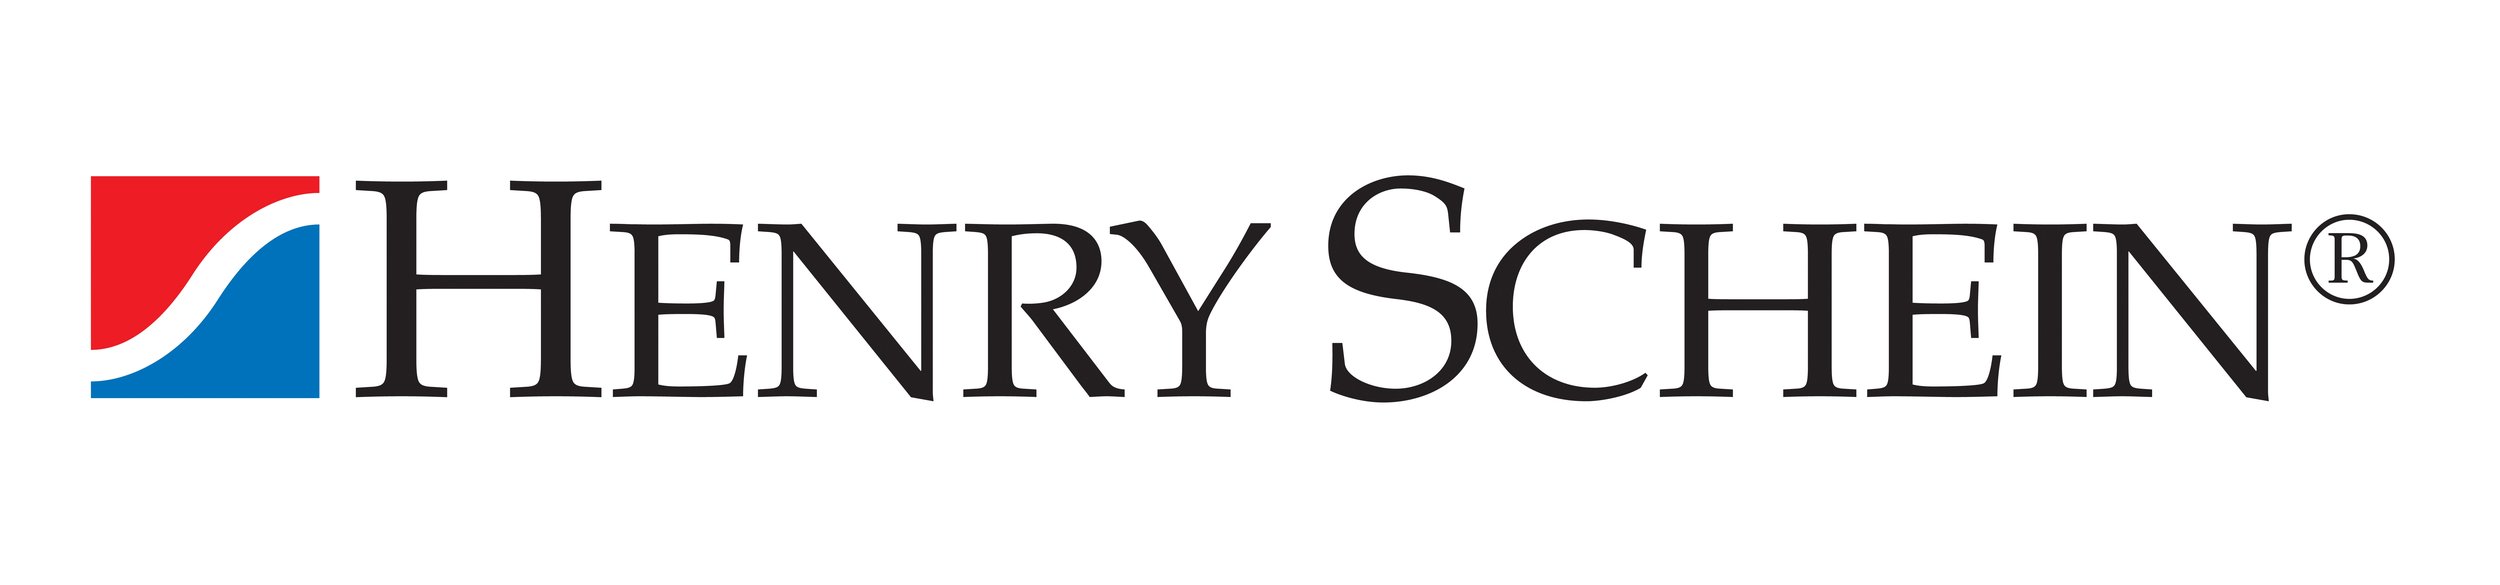 henry-schein-logo.jpg